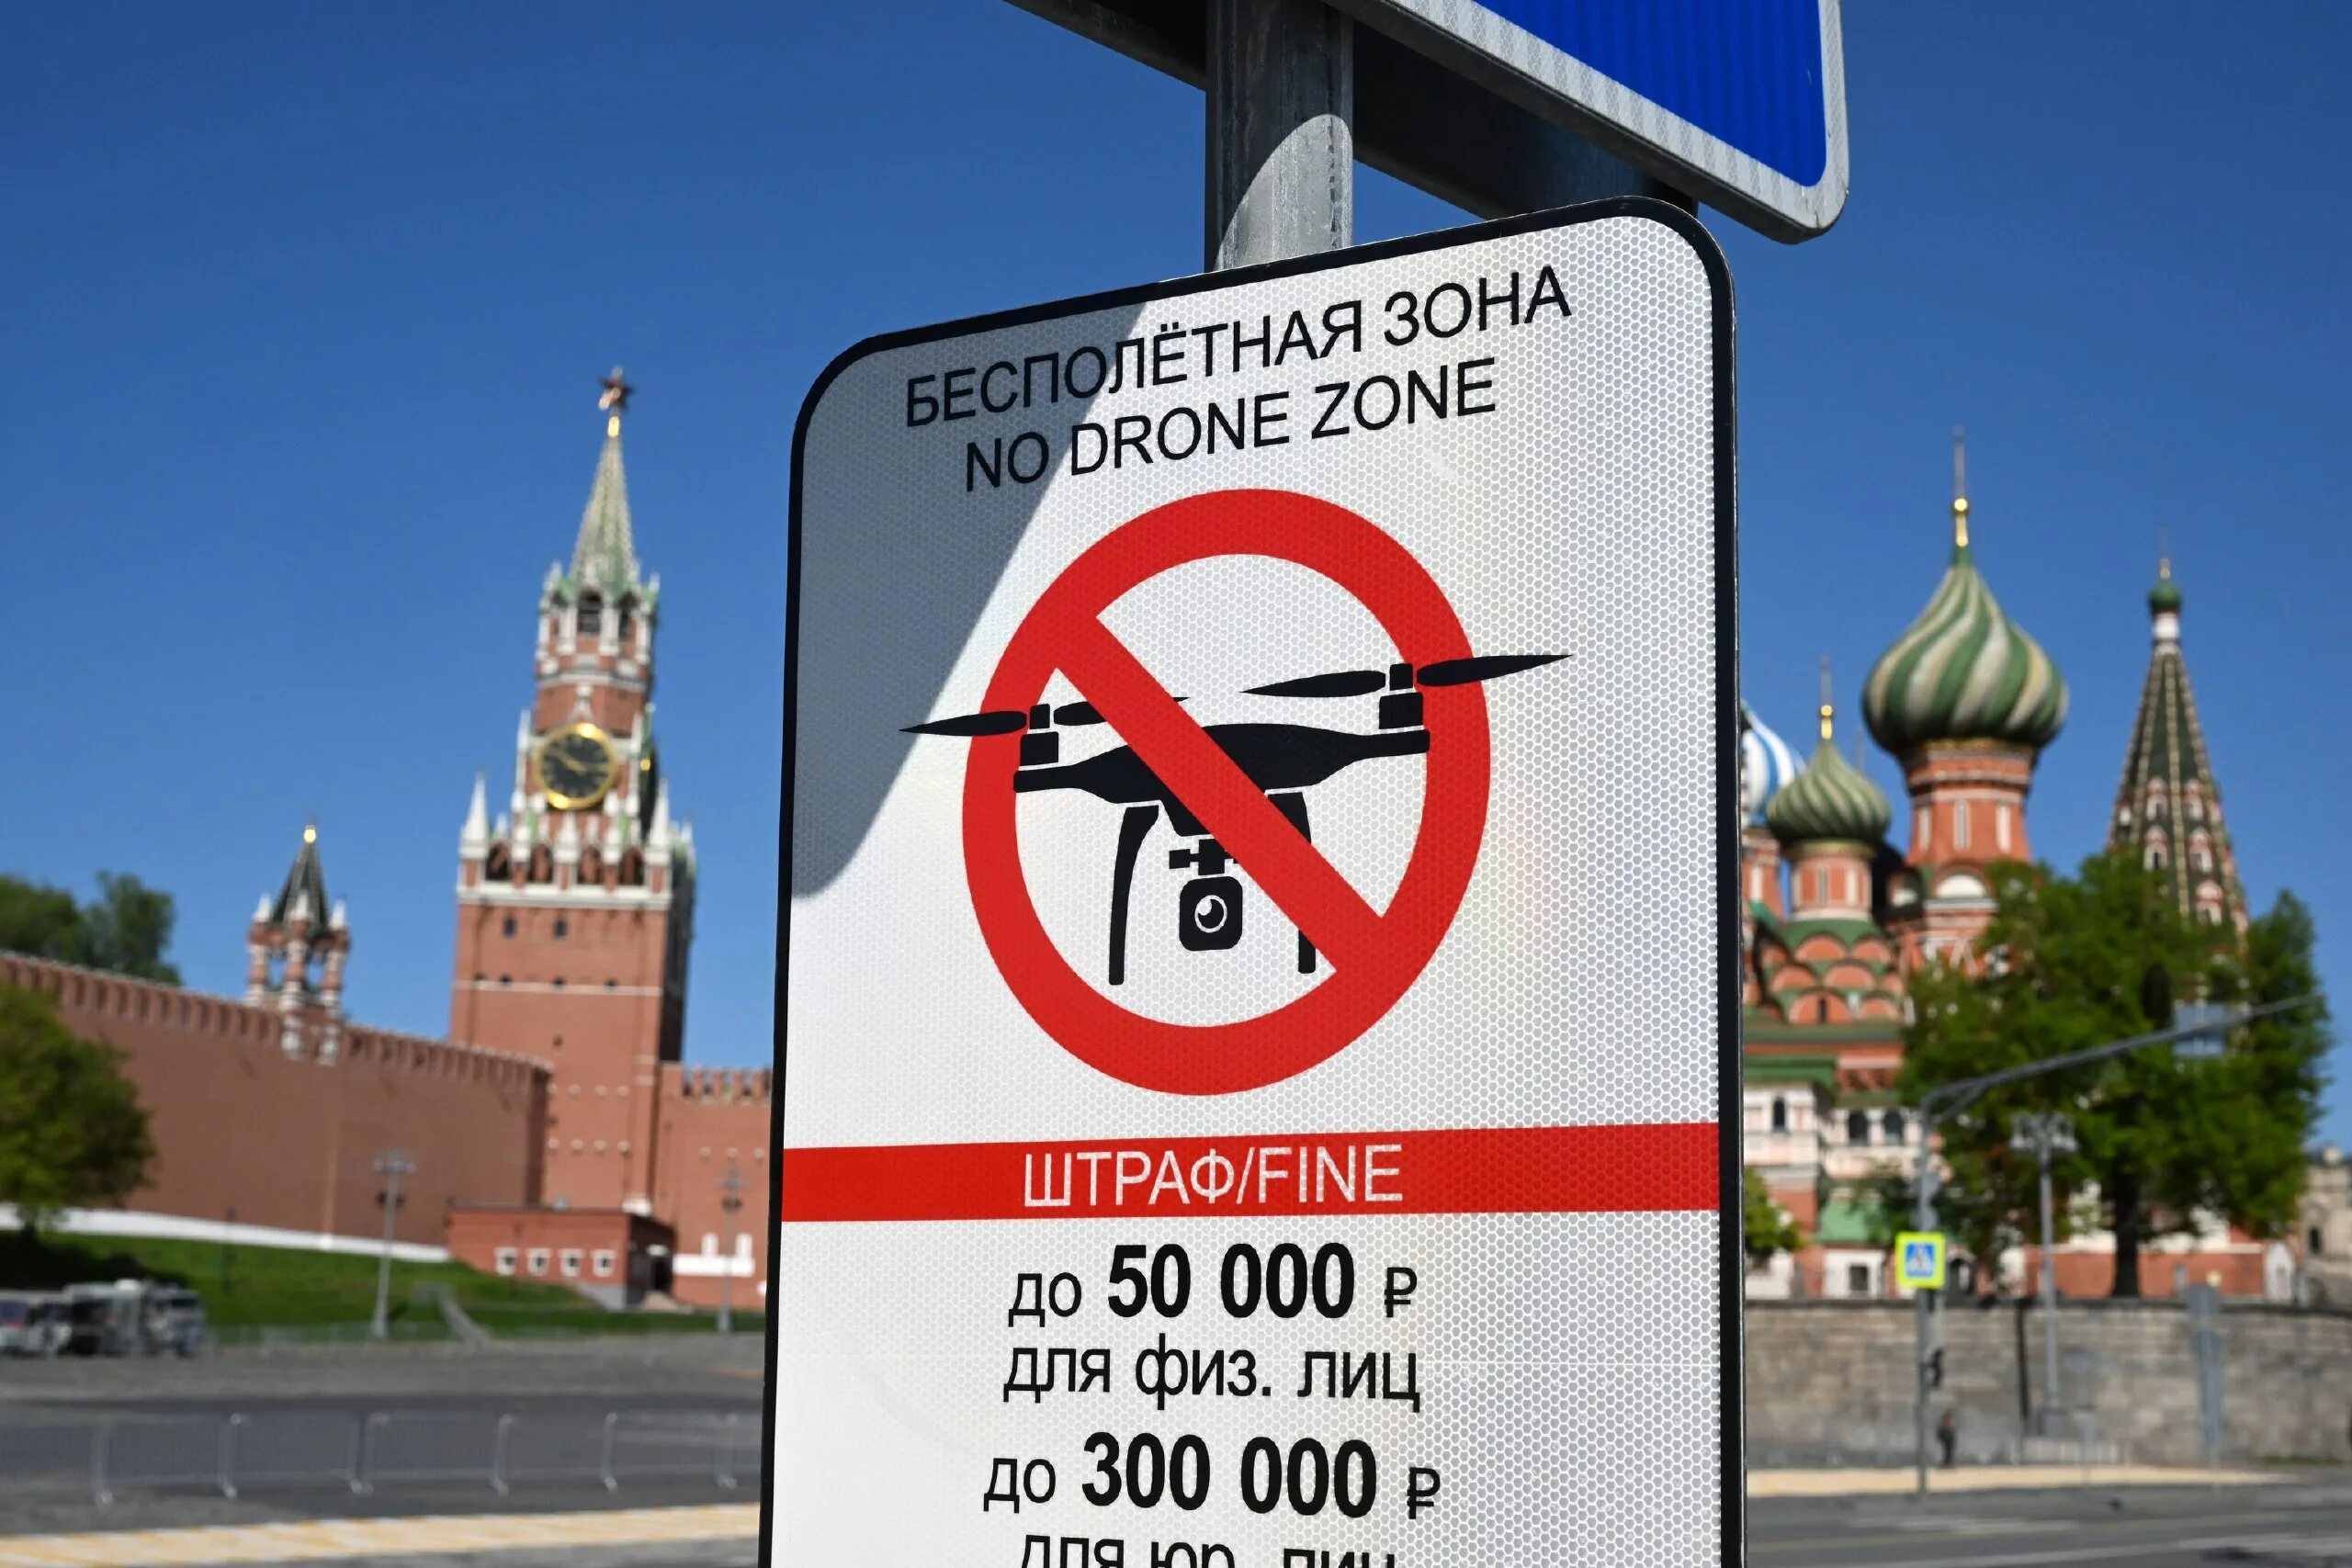 Запрещенный зданиях в Москве. Кремль 4 мая 2023. Москва бесполетная зона для дронов.